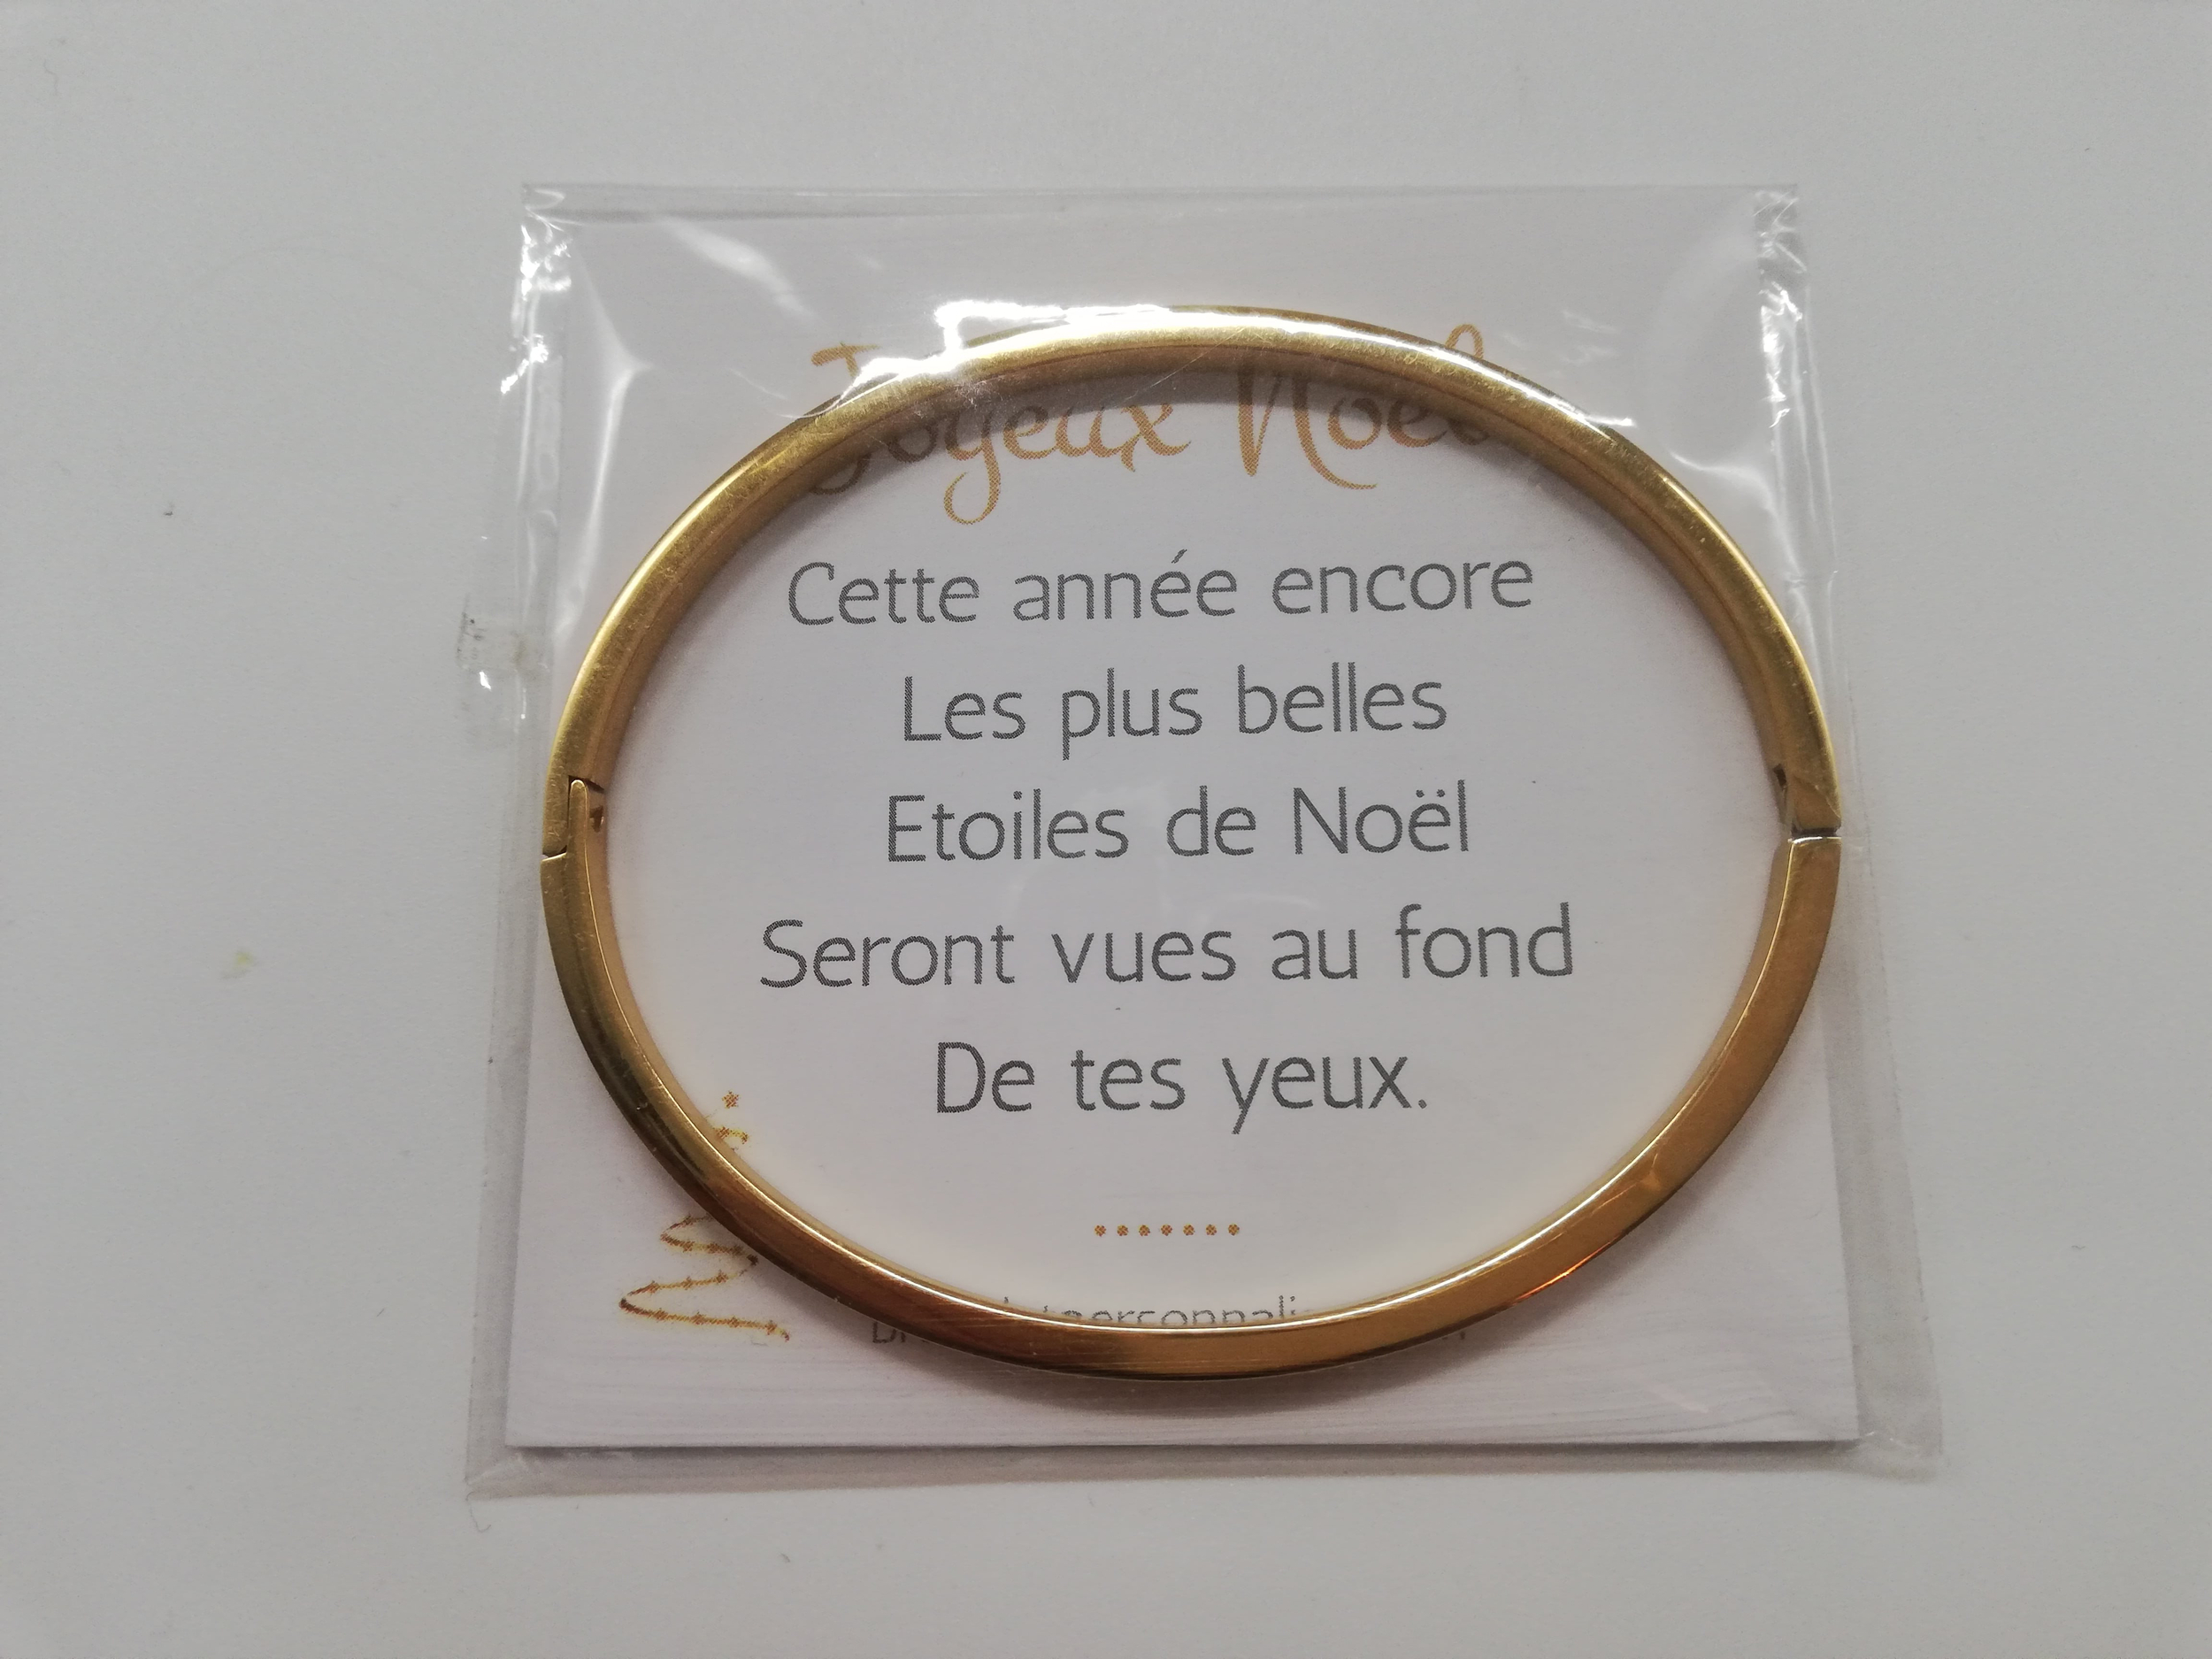 cadeau-de-noel-mamie-bracelet-personnalise-avec-une-carte-de-voeux-pour-les-fetes-de-fin-d-annee